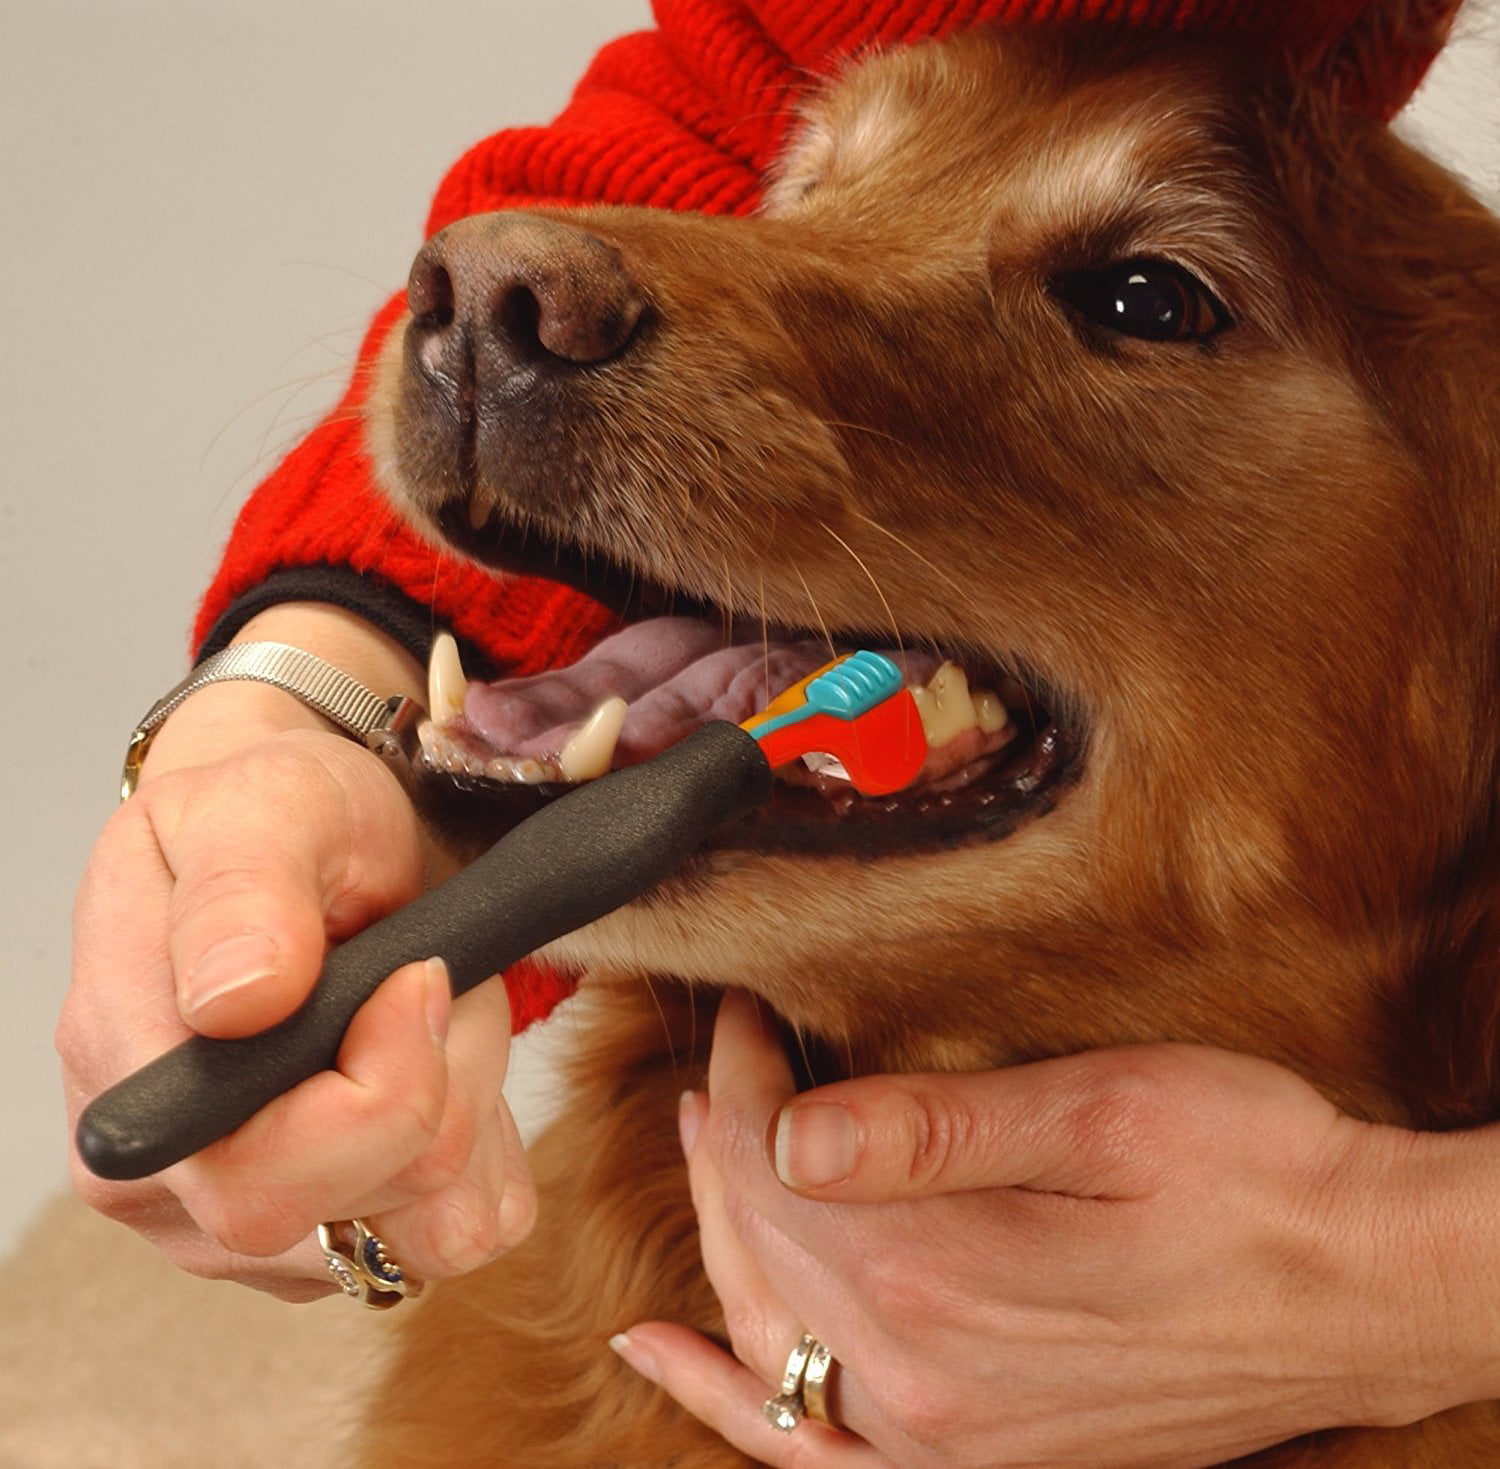 walmart dog toothbrush